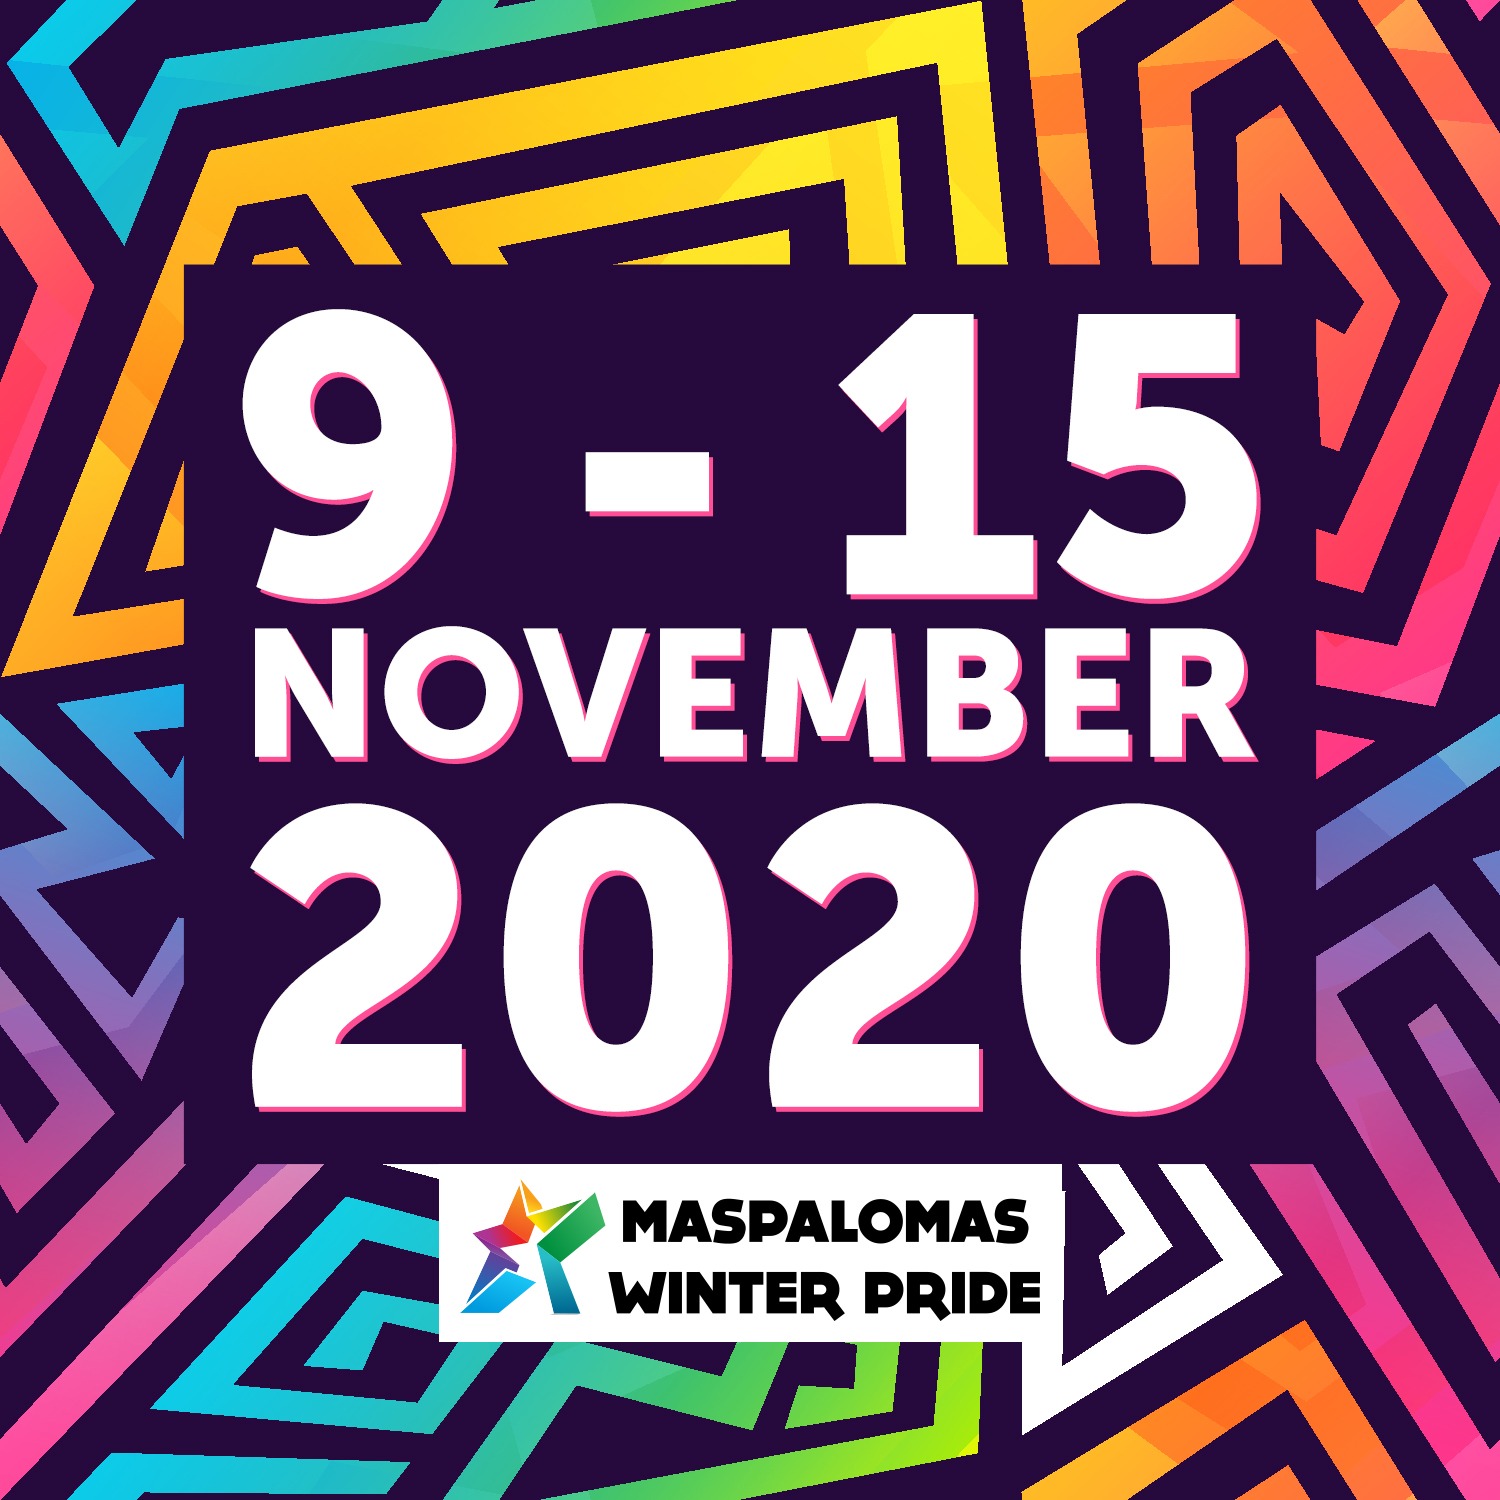 Maspalomas winter pride 2020